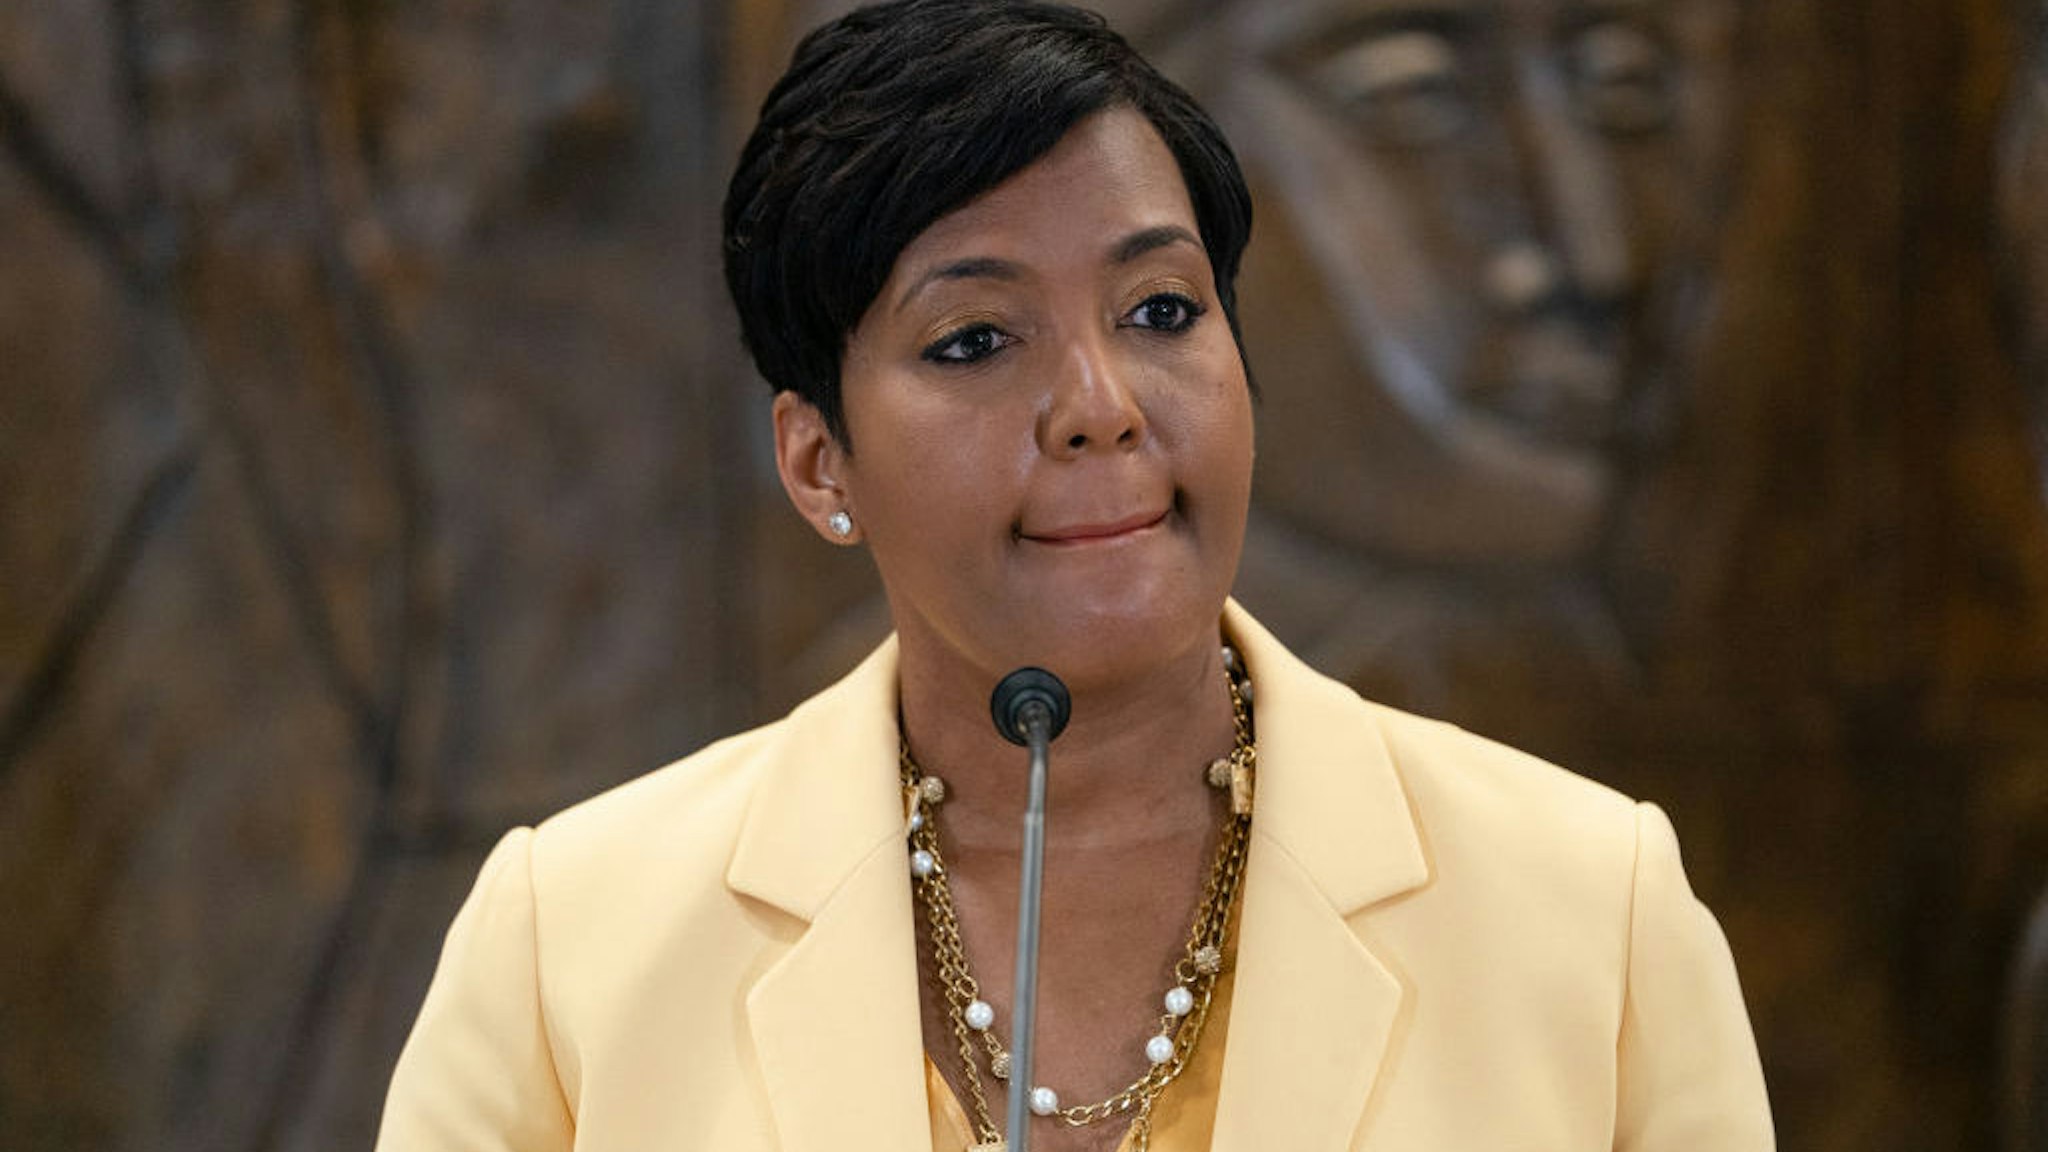 ATLANTA, GA - MAY 07: Atlanta Mayor Keisha Lance Bottoms announces that she will not seek reelection at a press conference at City Hall on May 7, 2021 in Atlanta, Georgia. (Photo by Elijah Nouvelage/Getty Images)